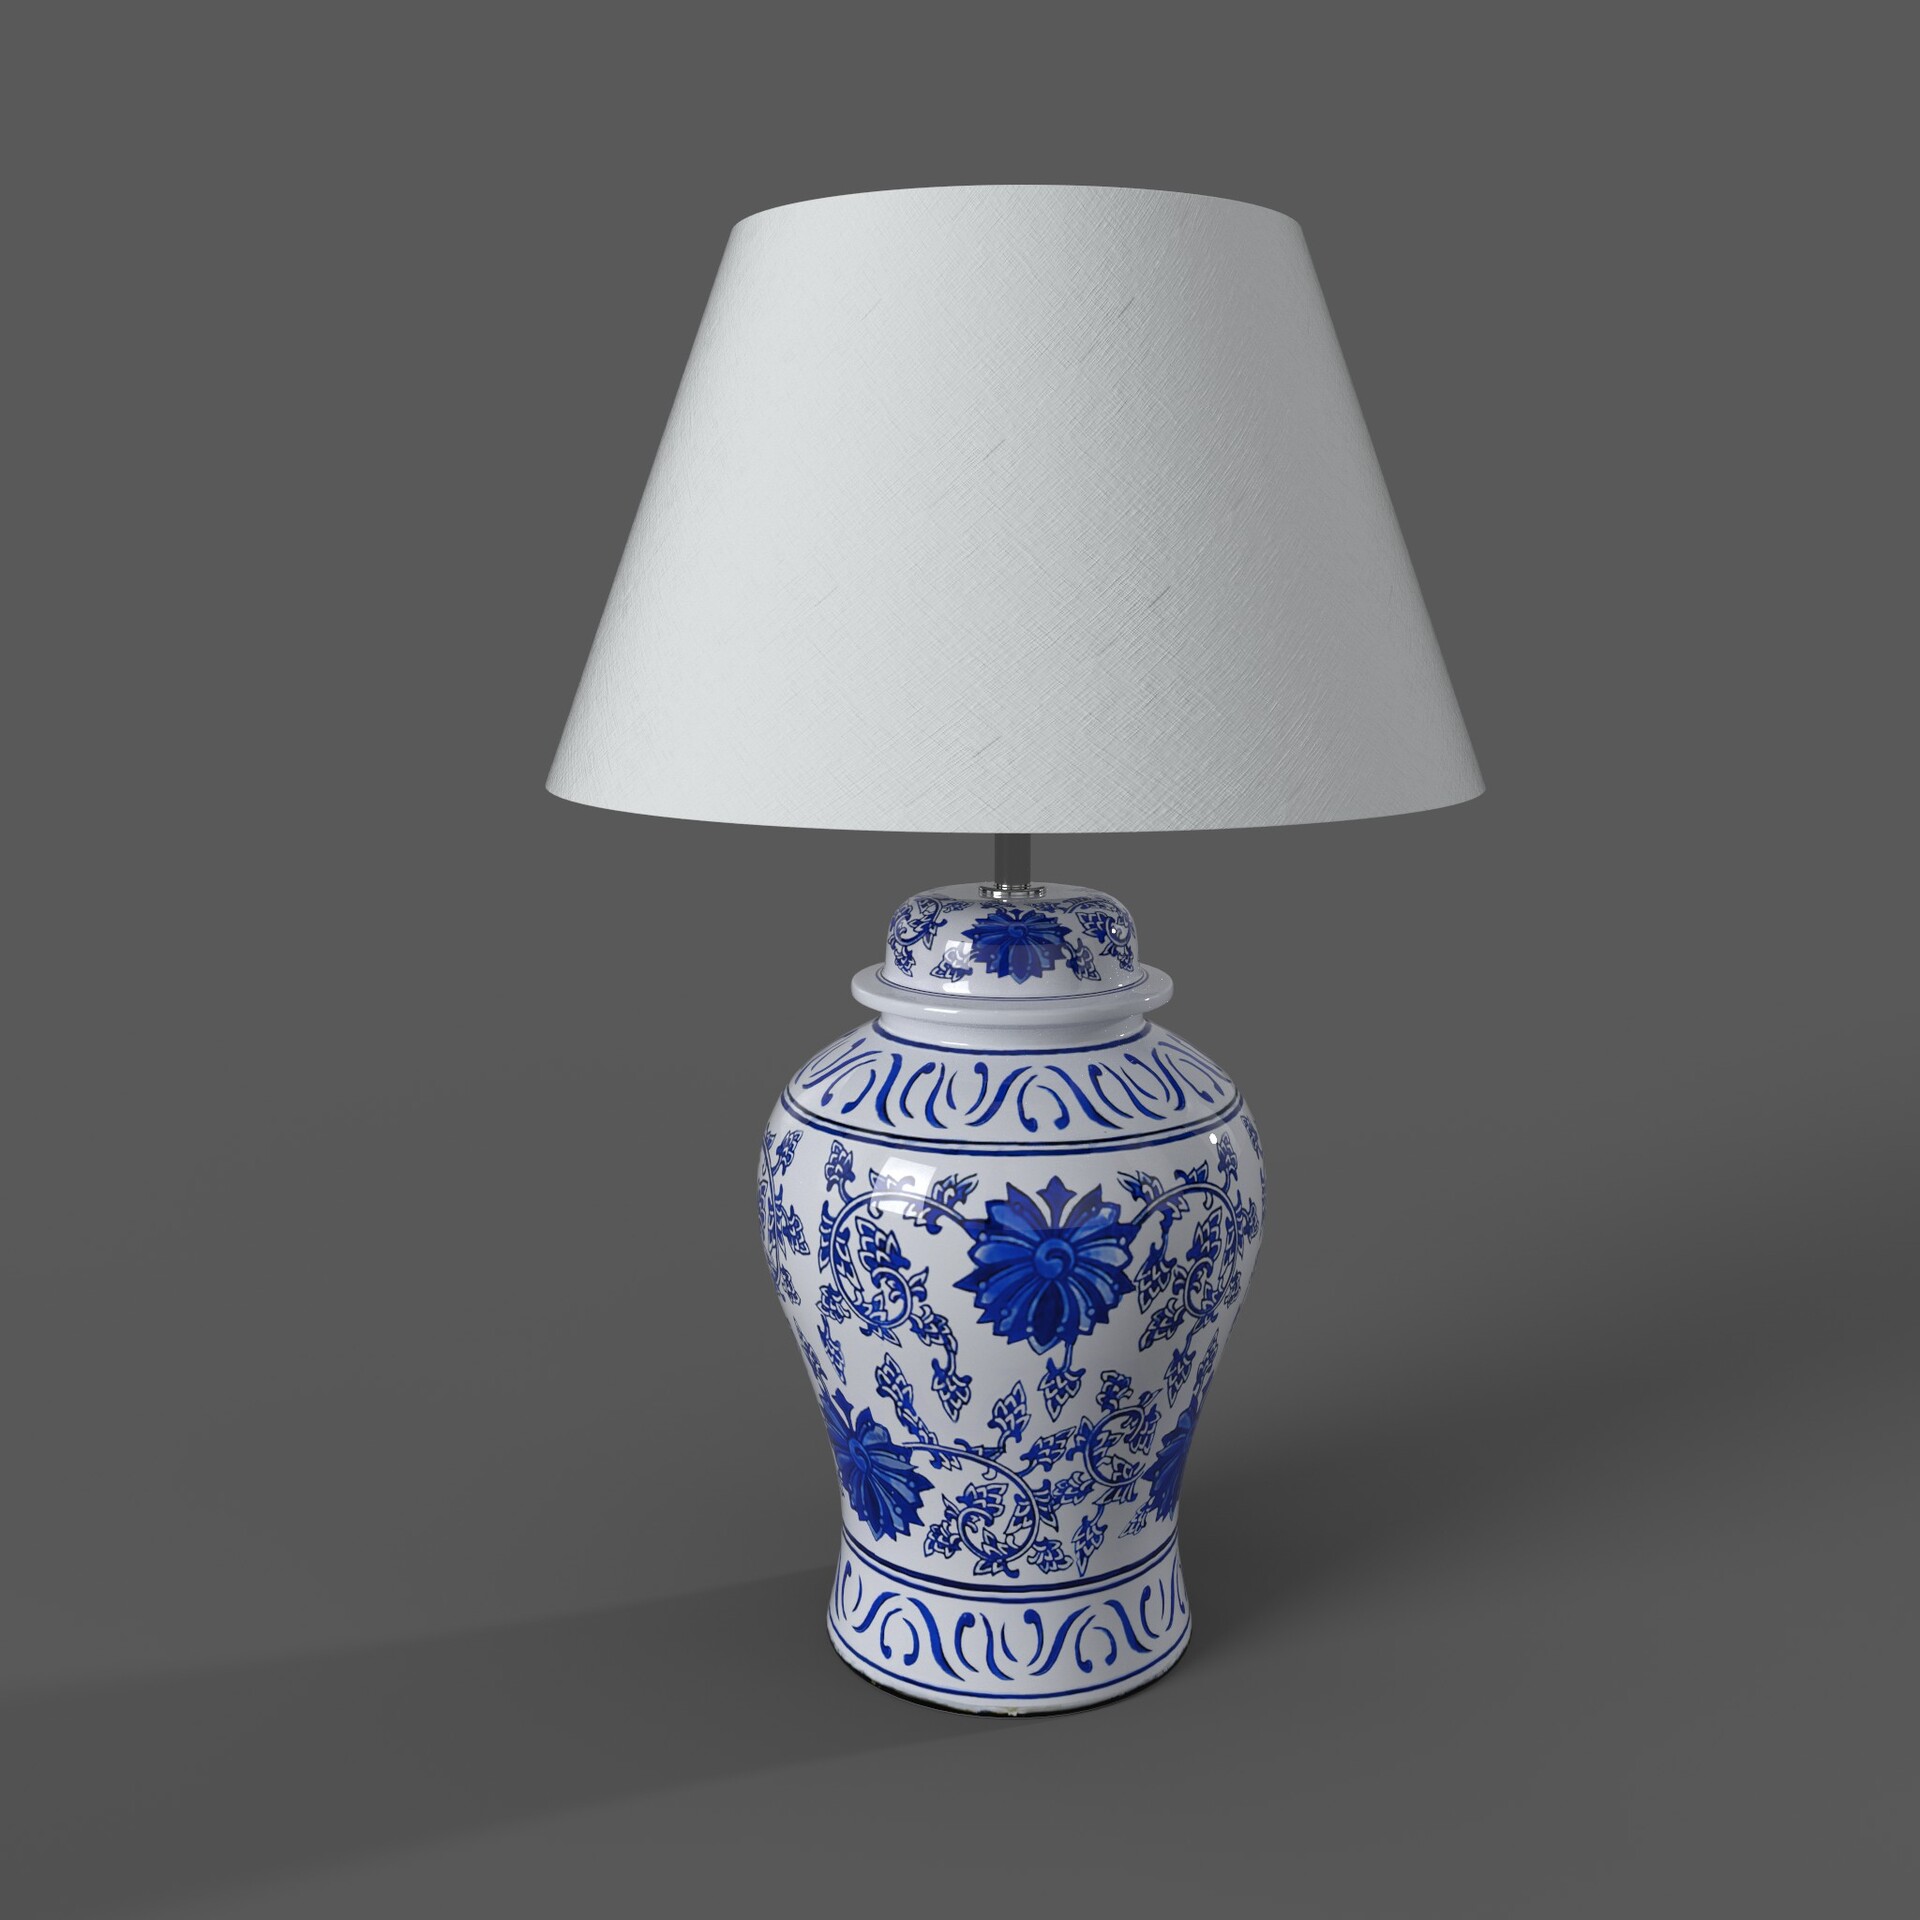 Blue Ceramic Ginger Jar Table Lamp, White Ceramic Ginger Jar Table Lamp